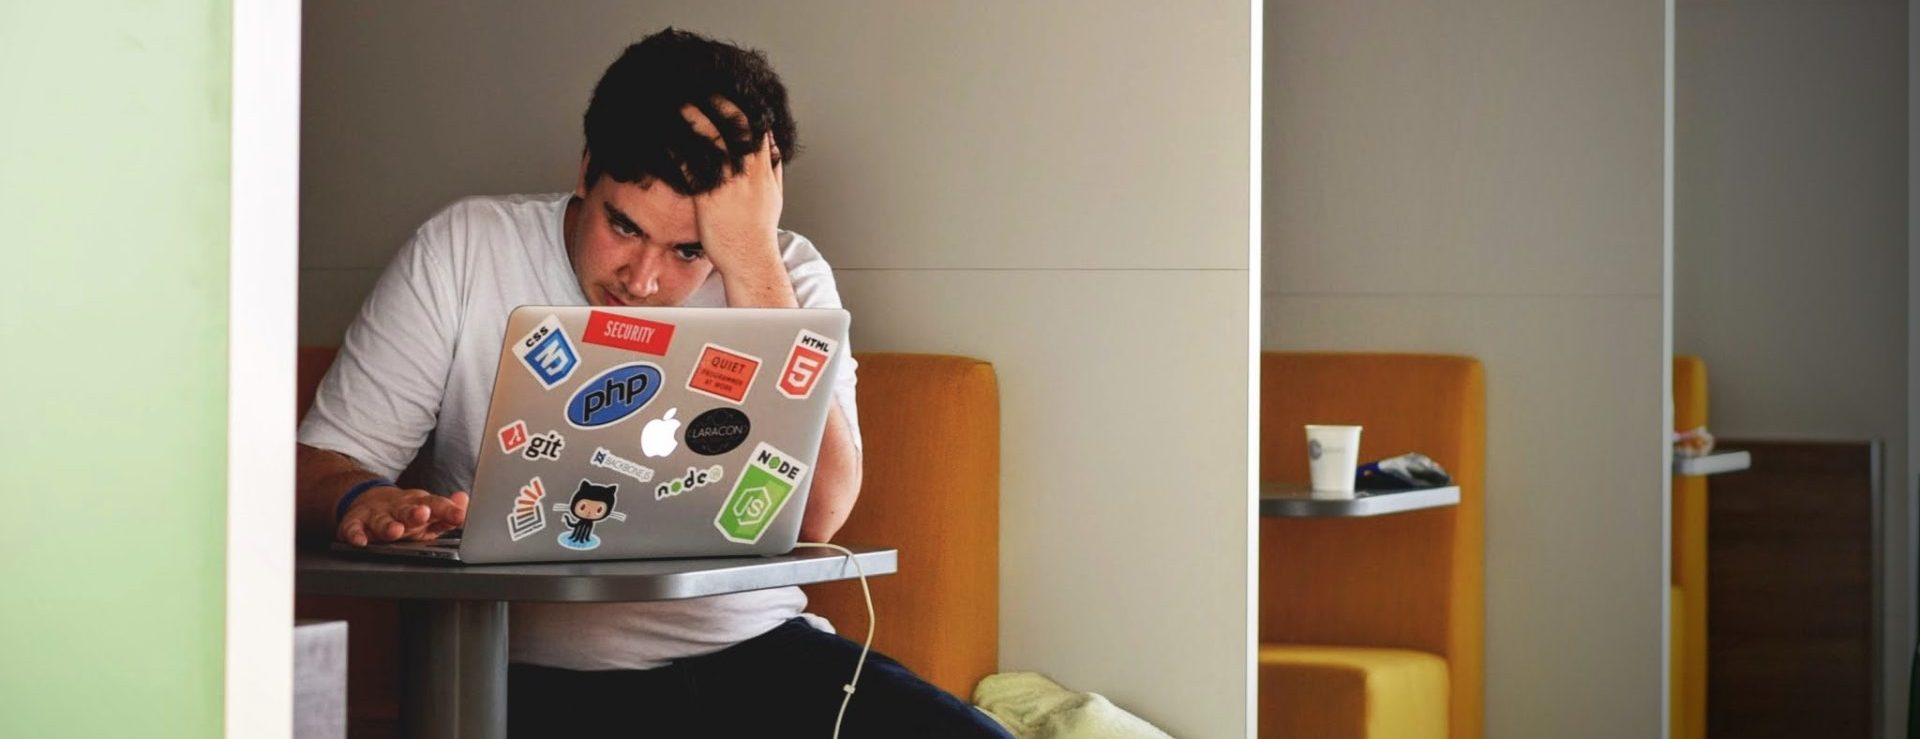 Mannlig student drar seg i håret mens han ser ned på en dataskjerm.